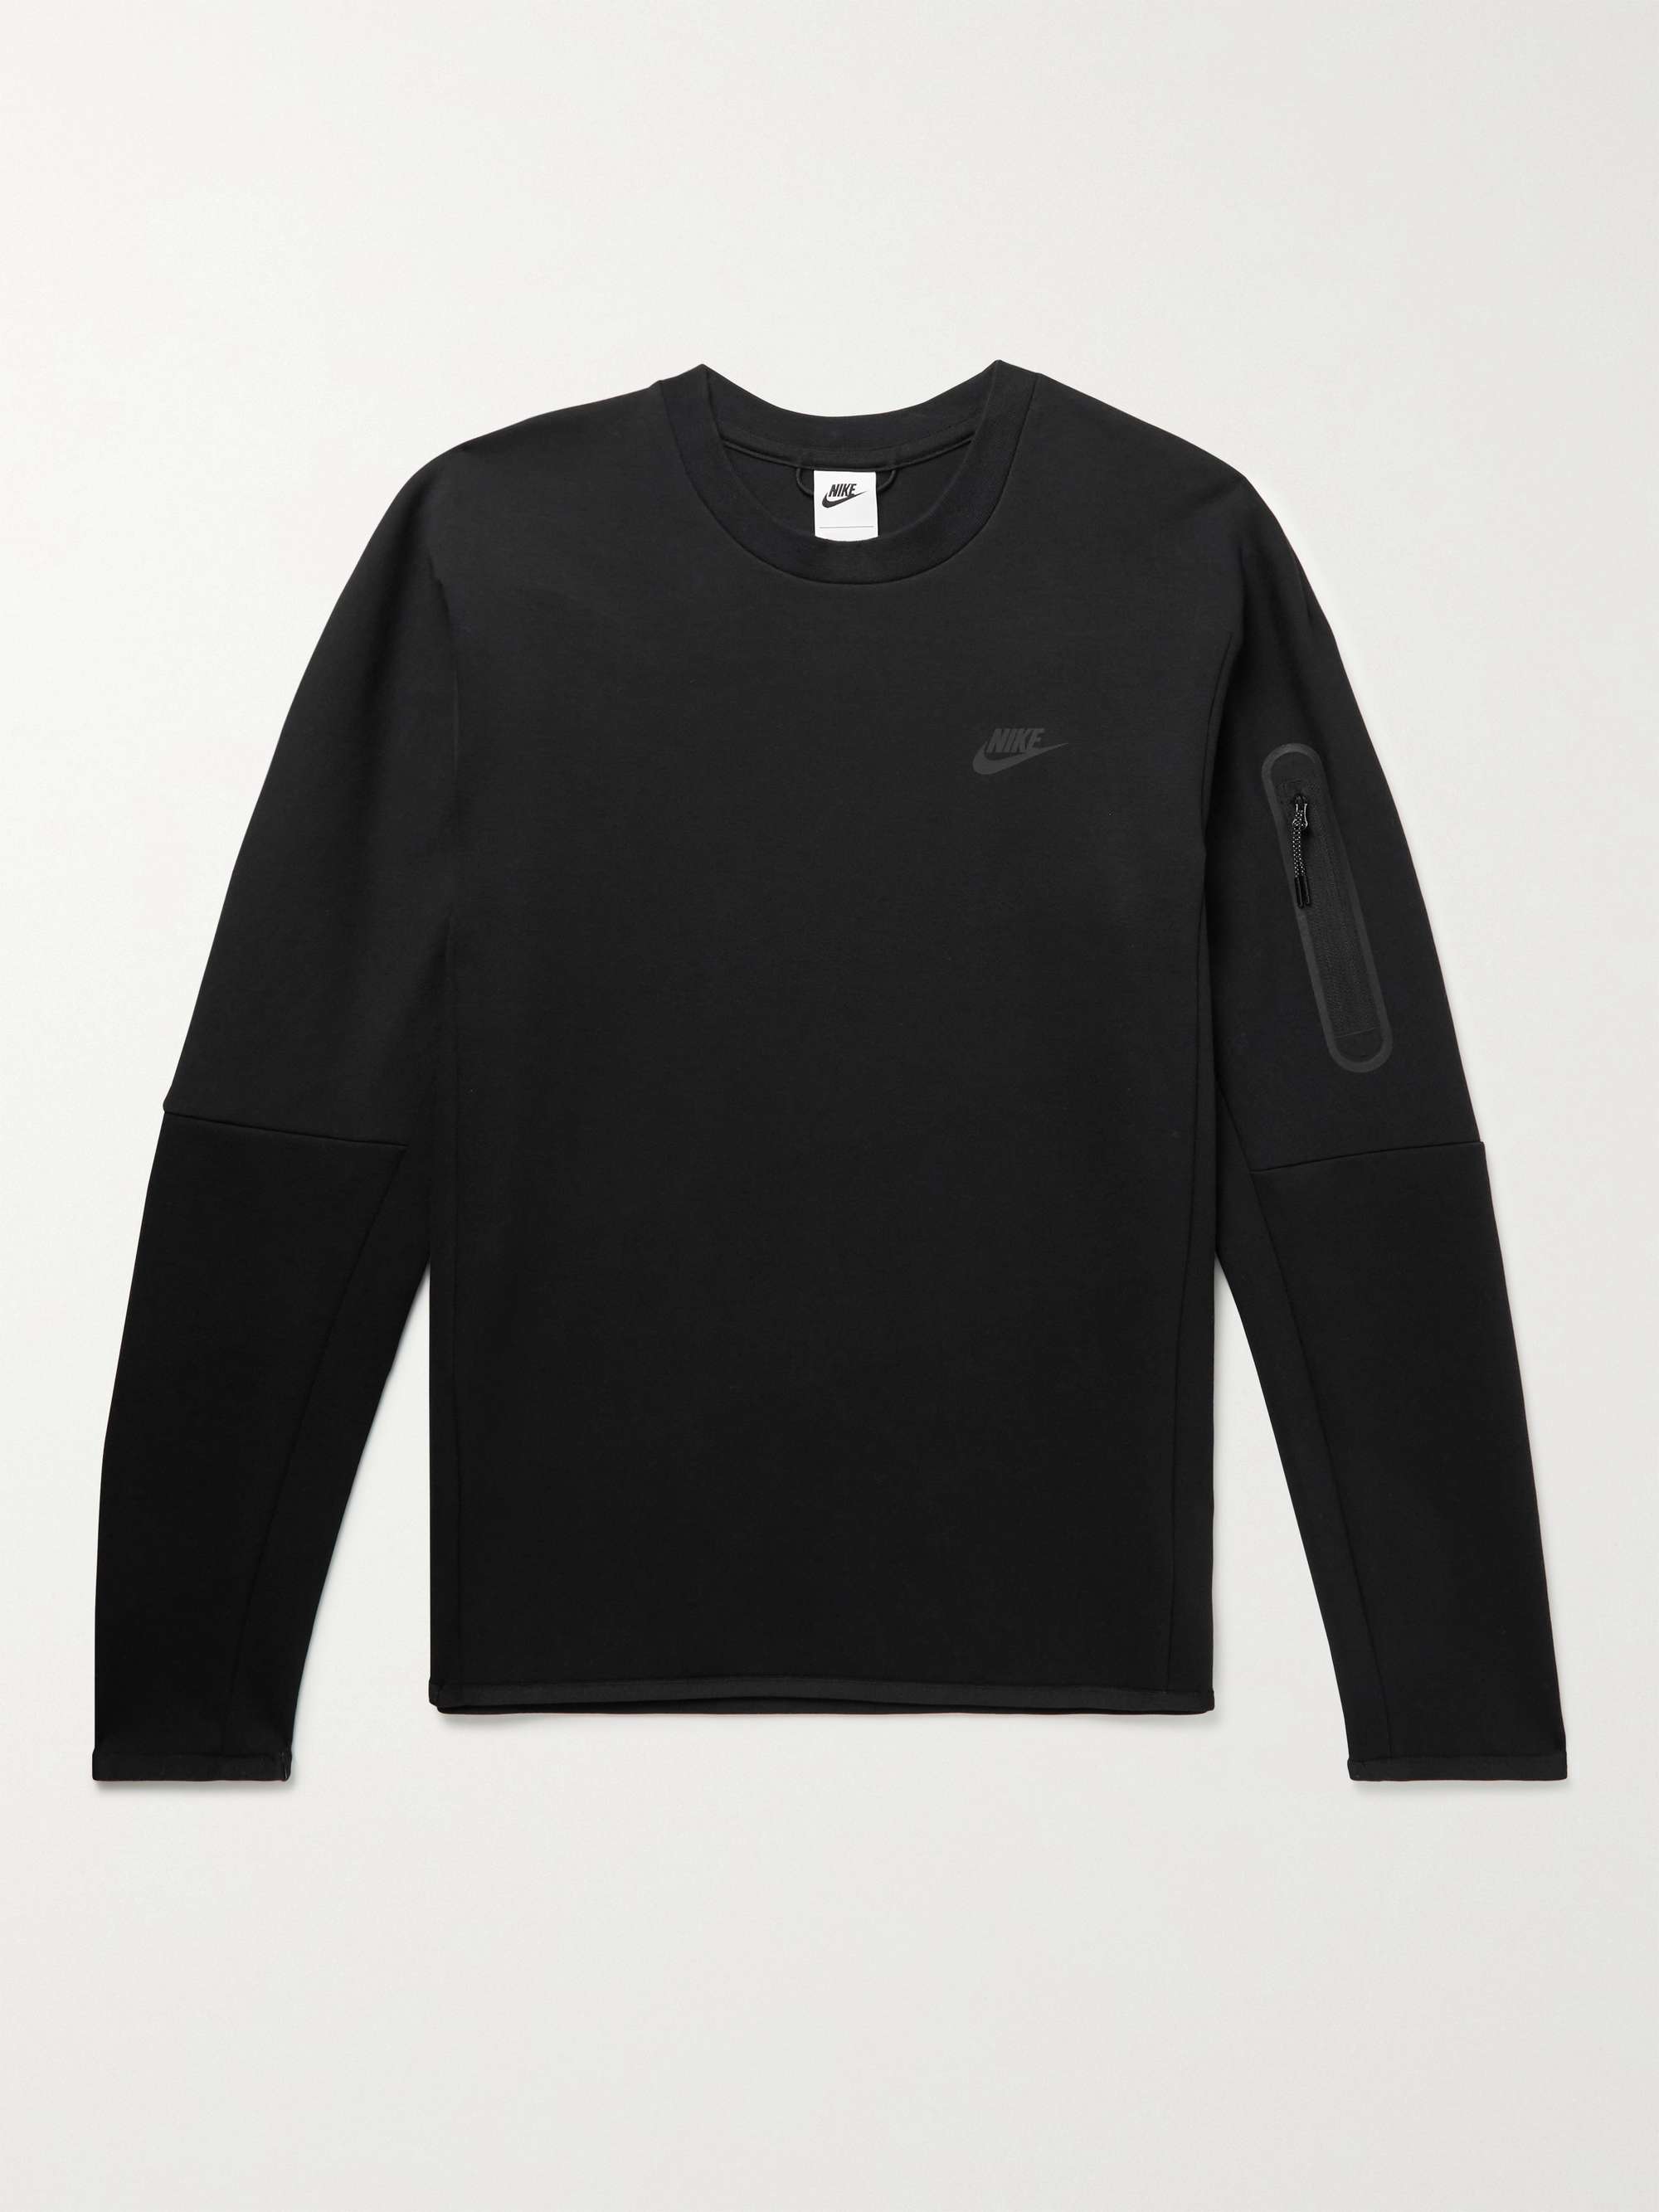 Black Sportswear Cotton-Blend Tech Fleece Sweatshirt | NIKE | MR PORTER